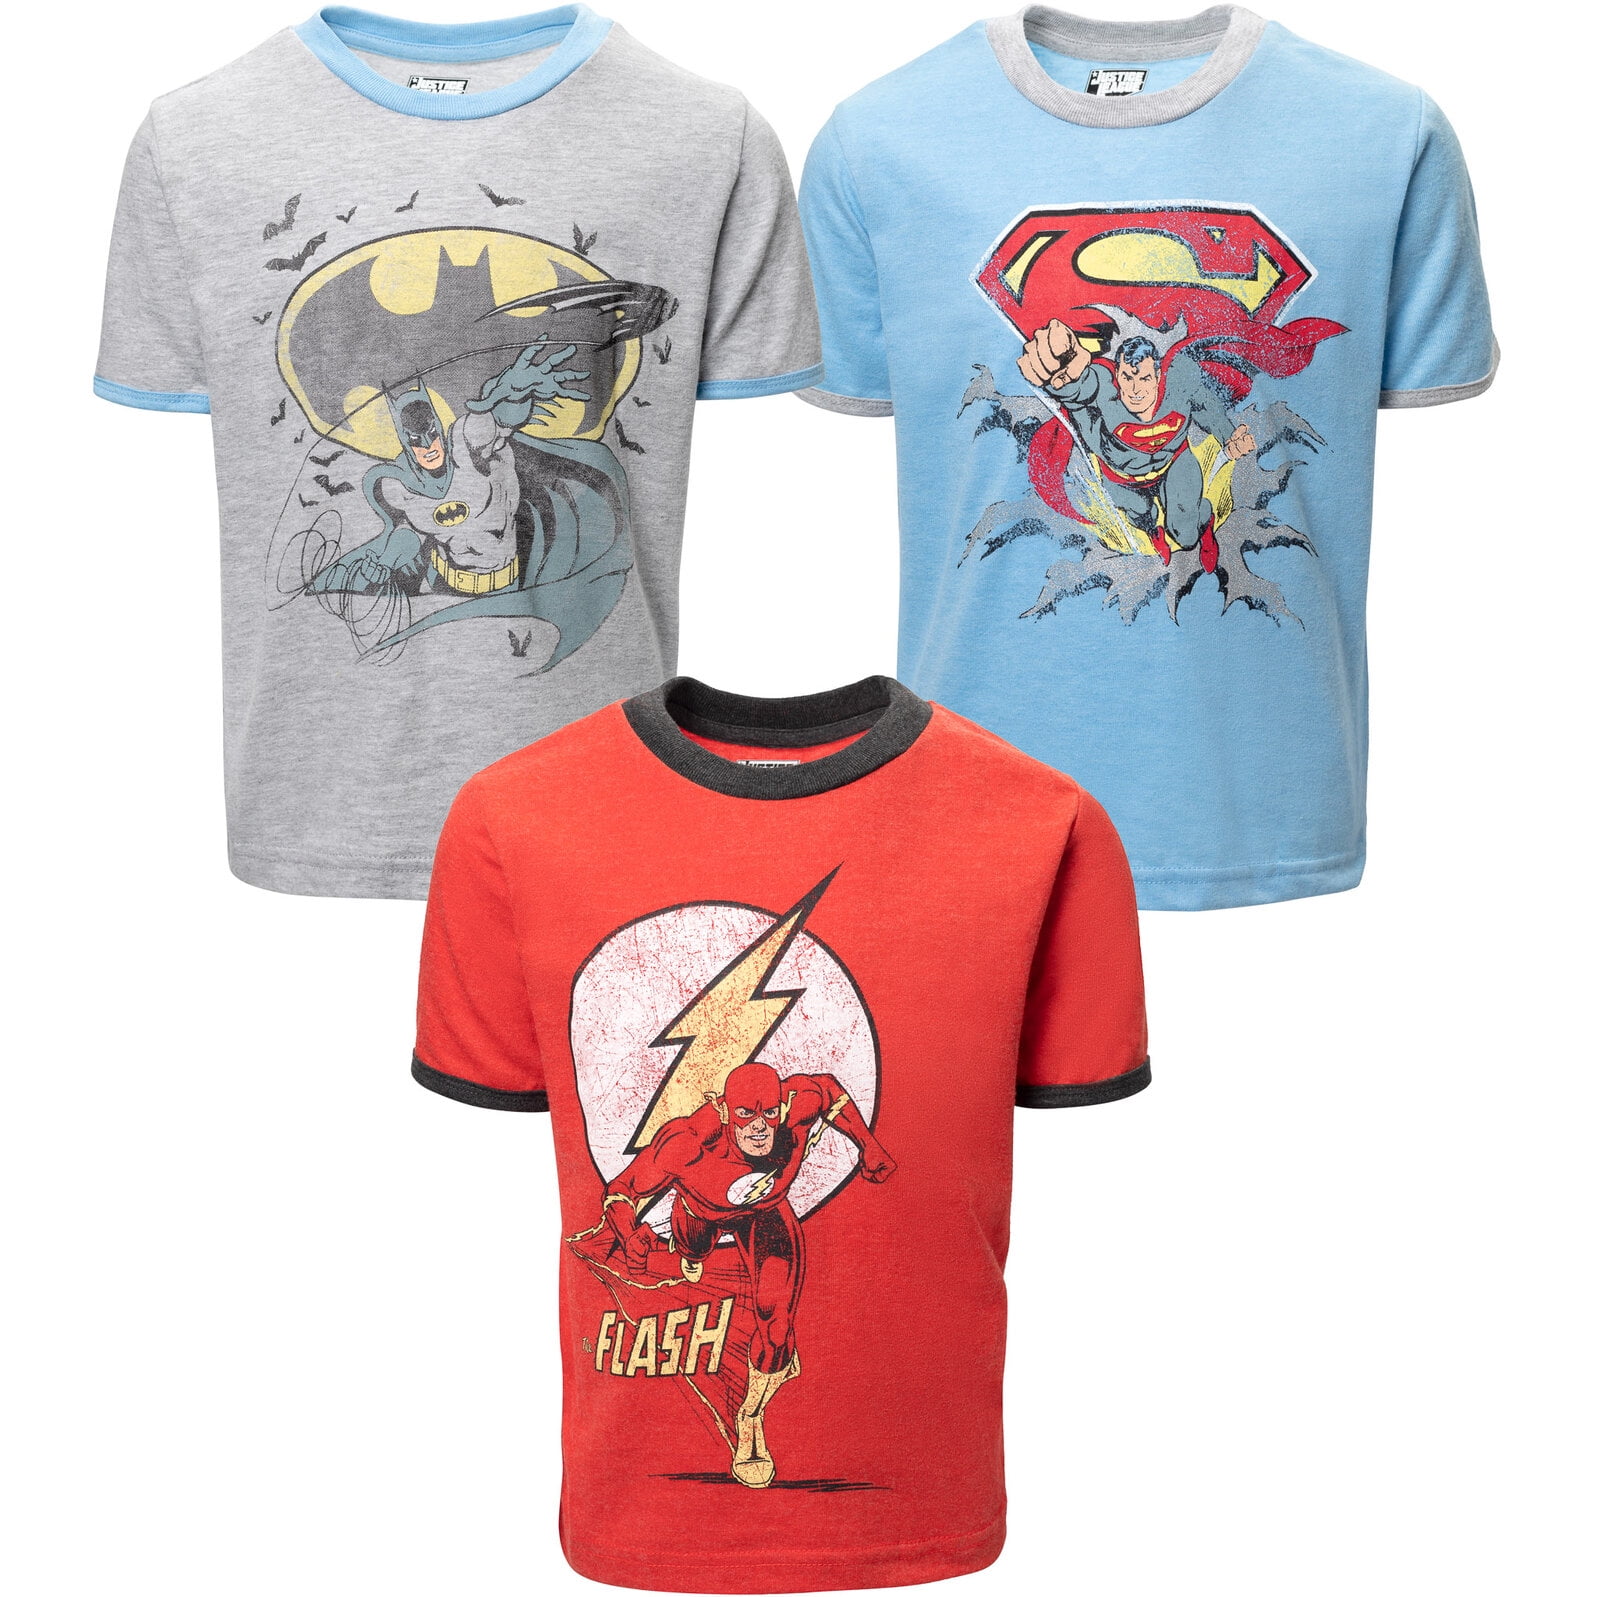 The 3T T-Shirts Toddler Boys Pack Justice Superman Batman DC Graphic 3 Comics League Flash